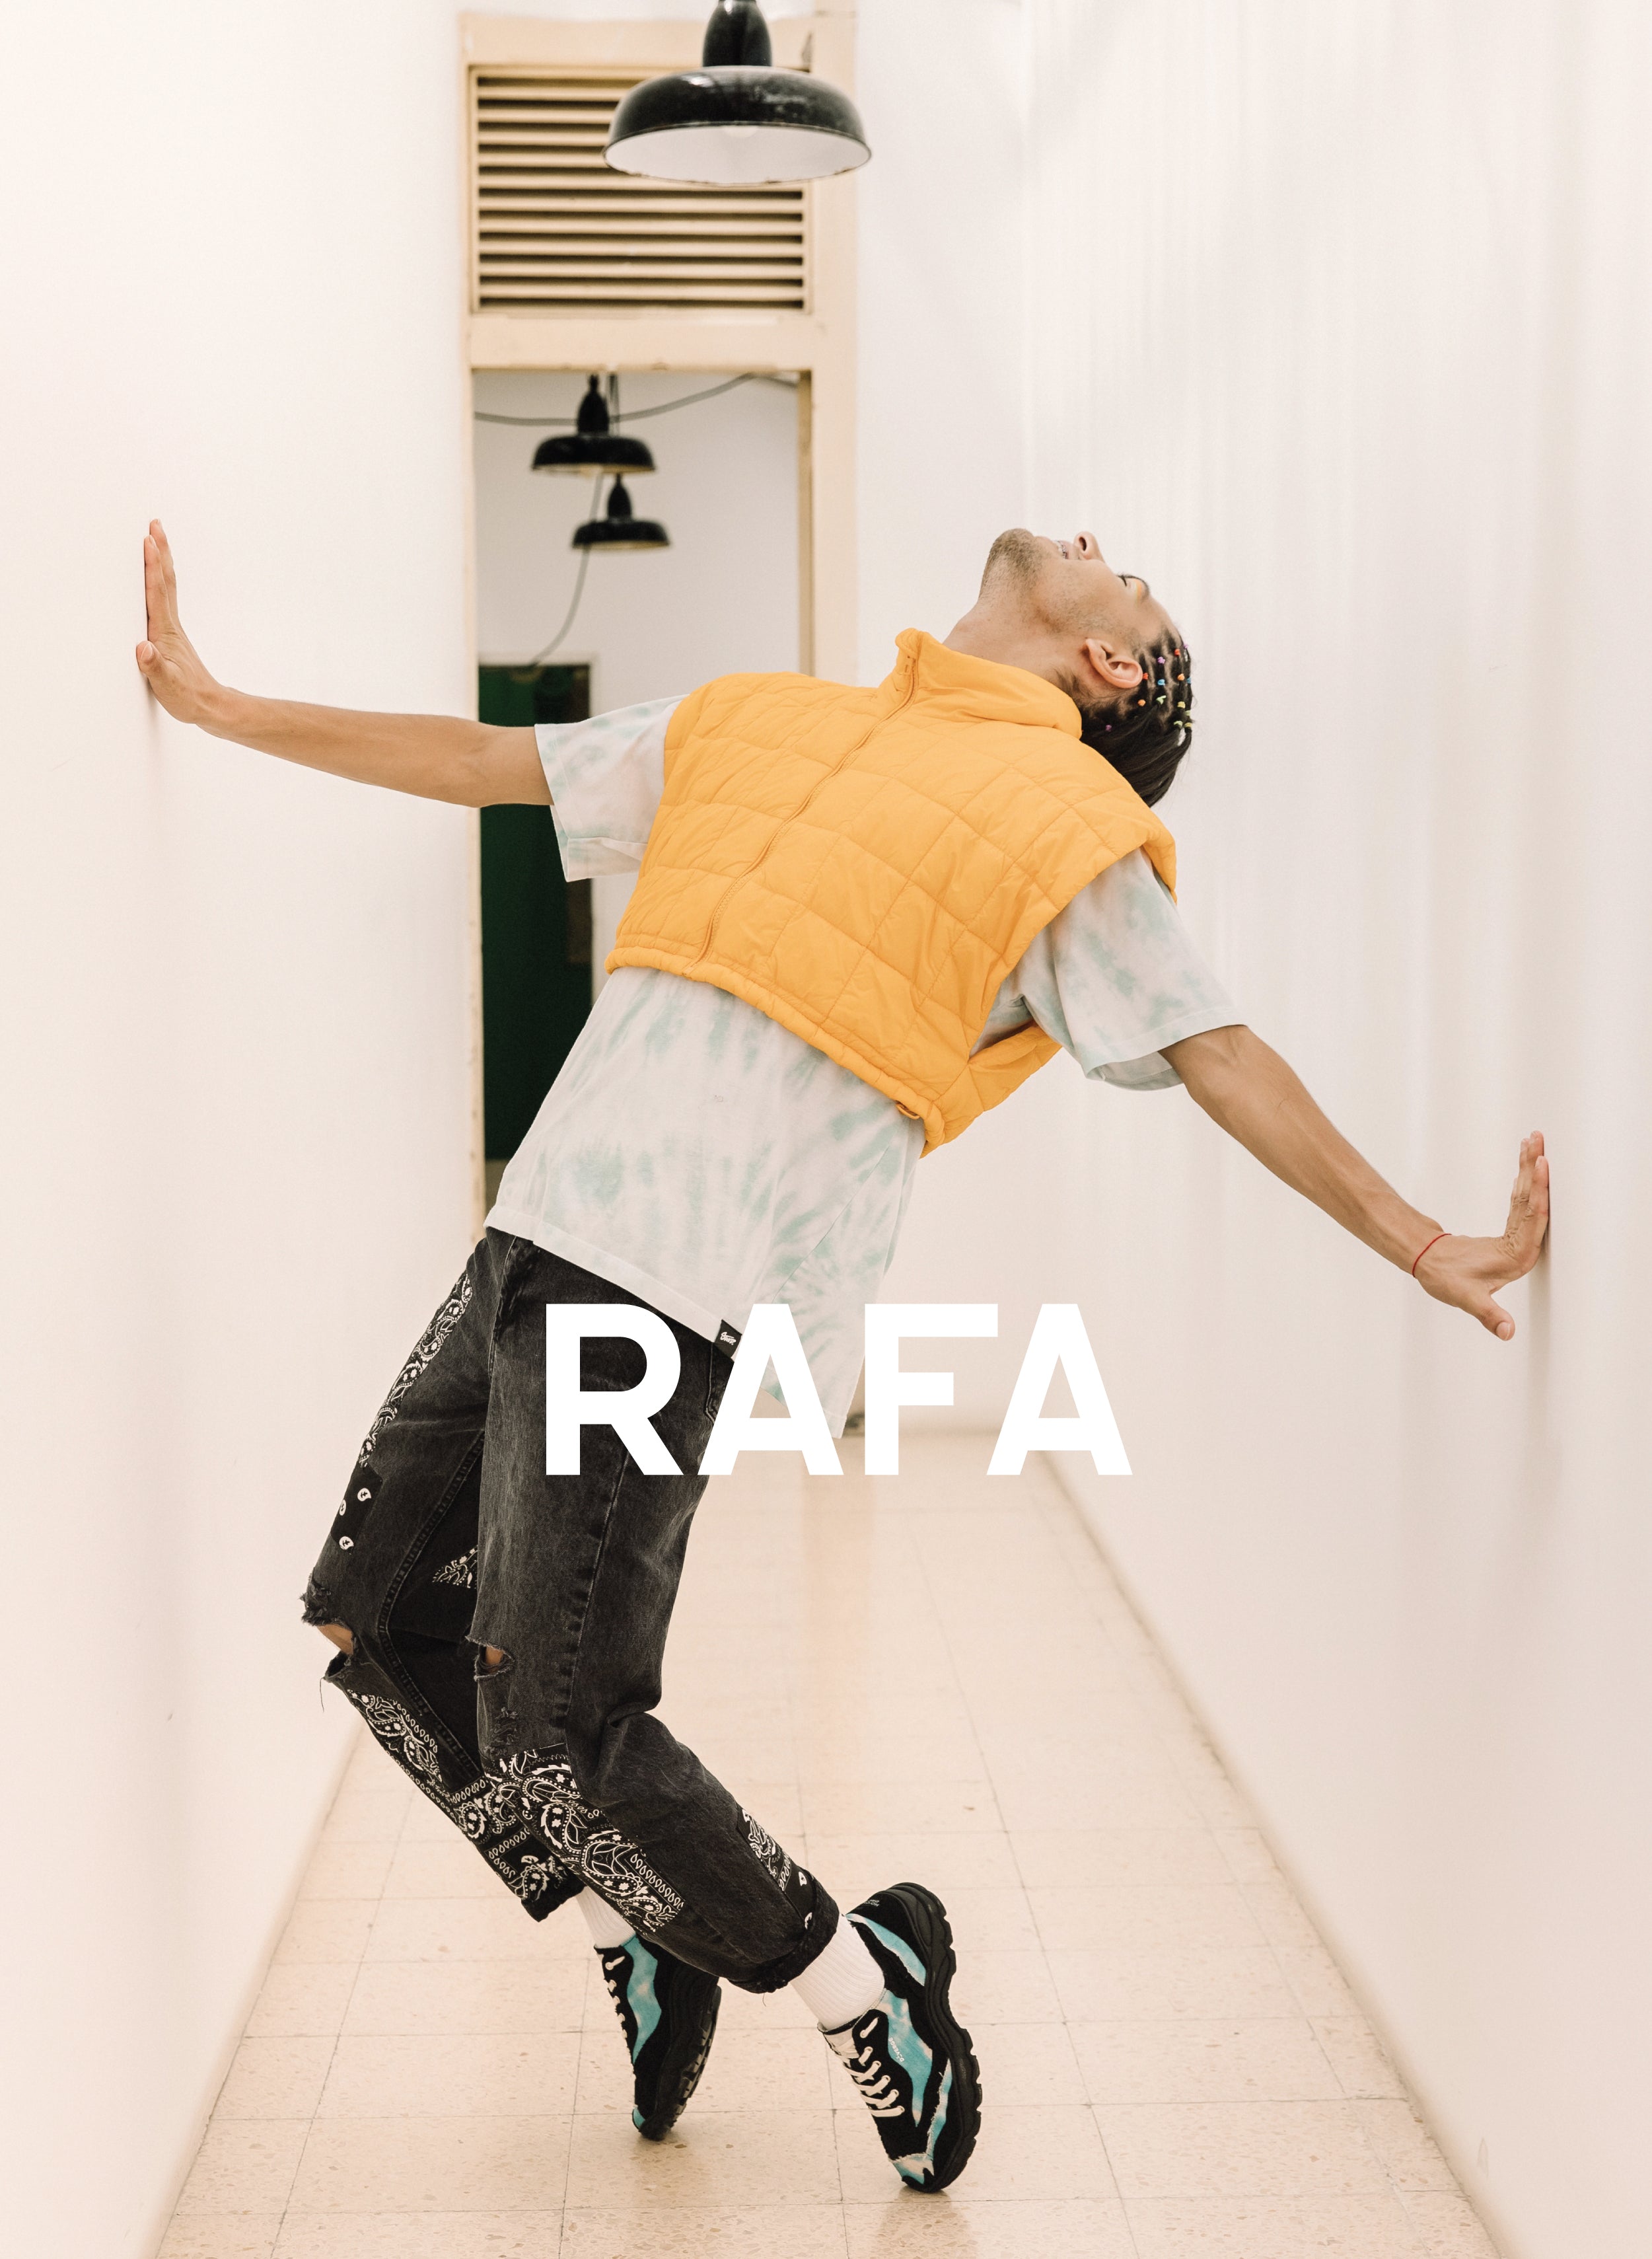 Rafa Er hing über seinen Füßen und trug Diverge sneakers, Förderung sozialer Auswirkungen und maßgefertigter Schuhe im Rahmen des IMAGINE-Projekts.